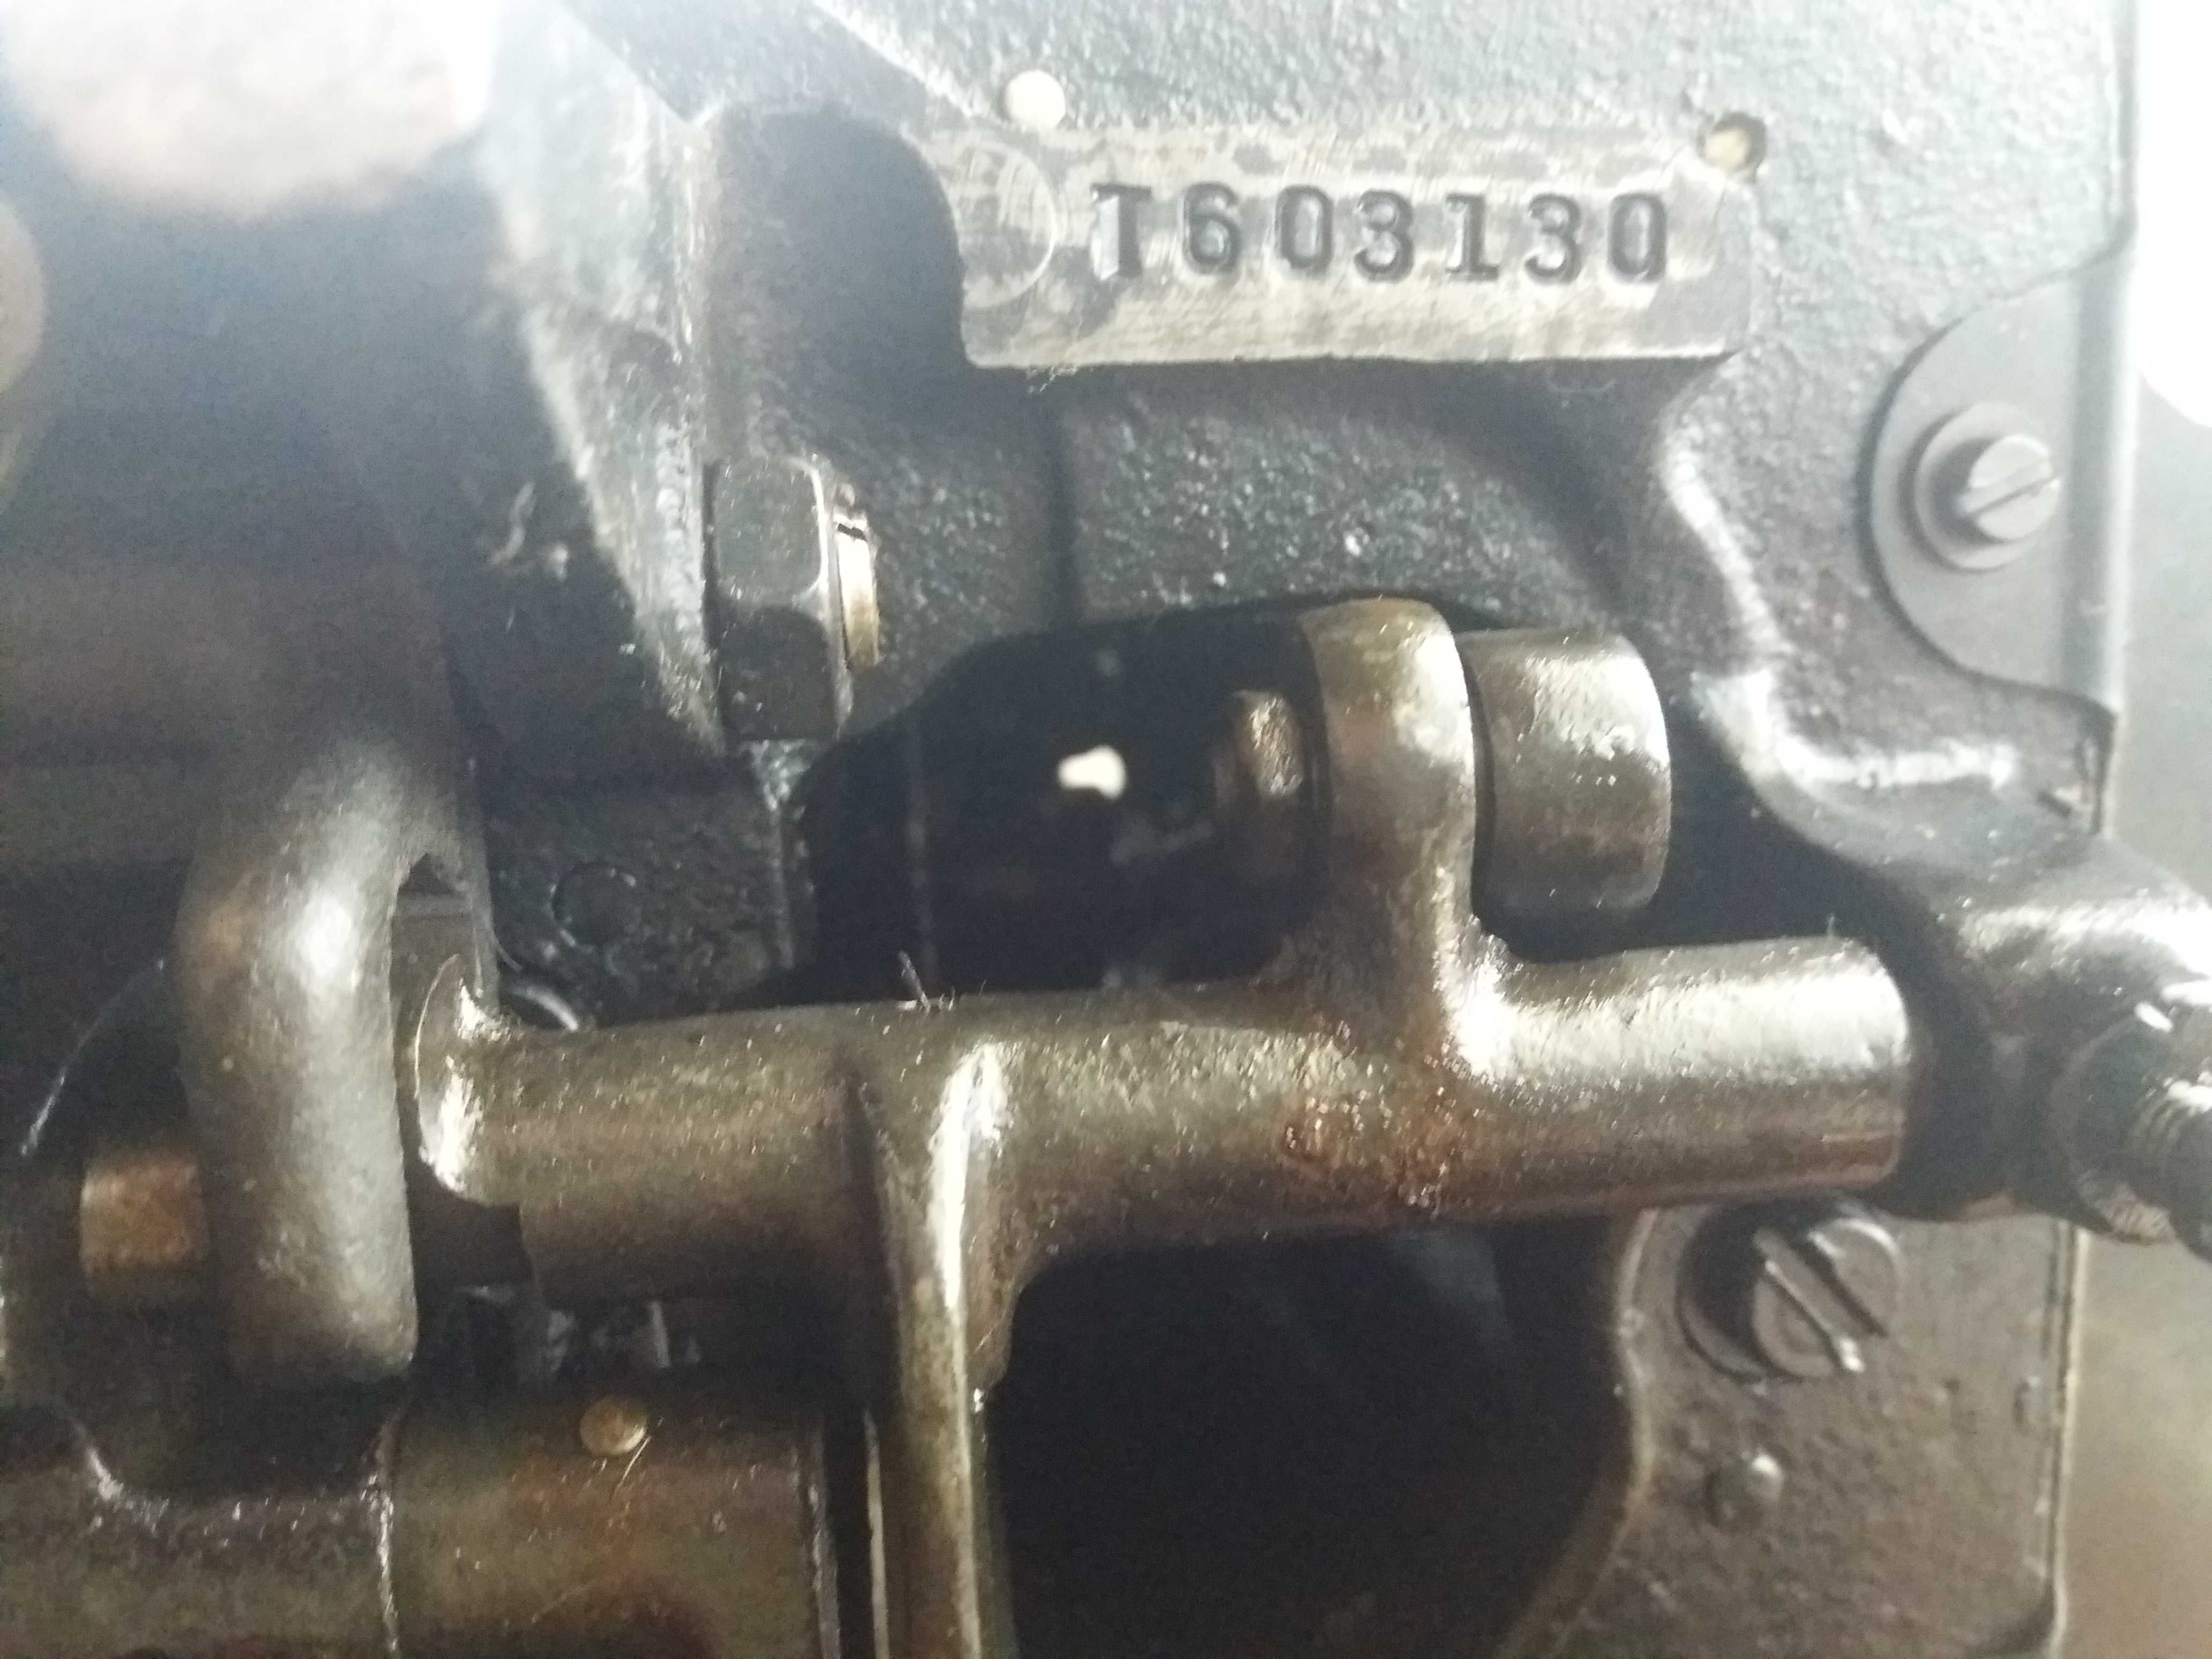 Лапка шпульный колпачок пружина на швейную машинку.